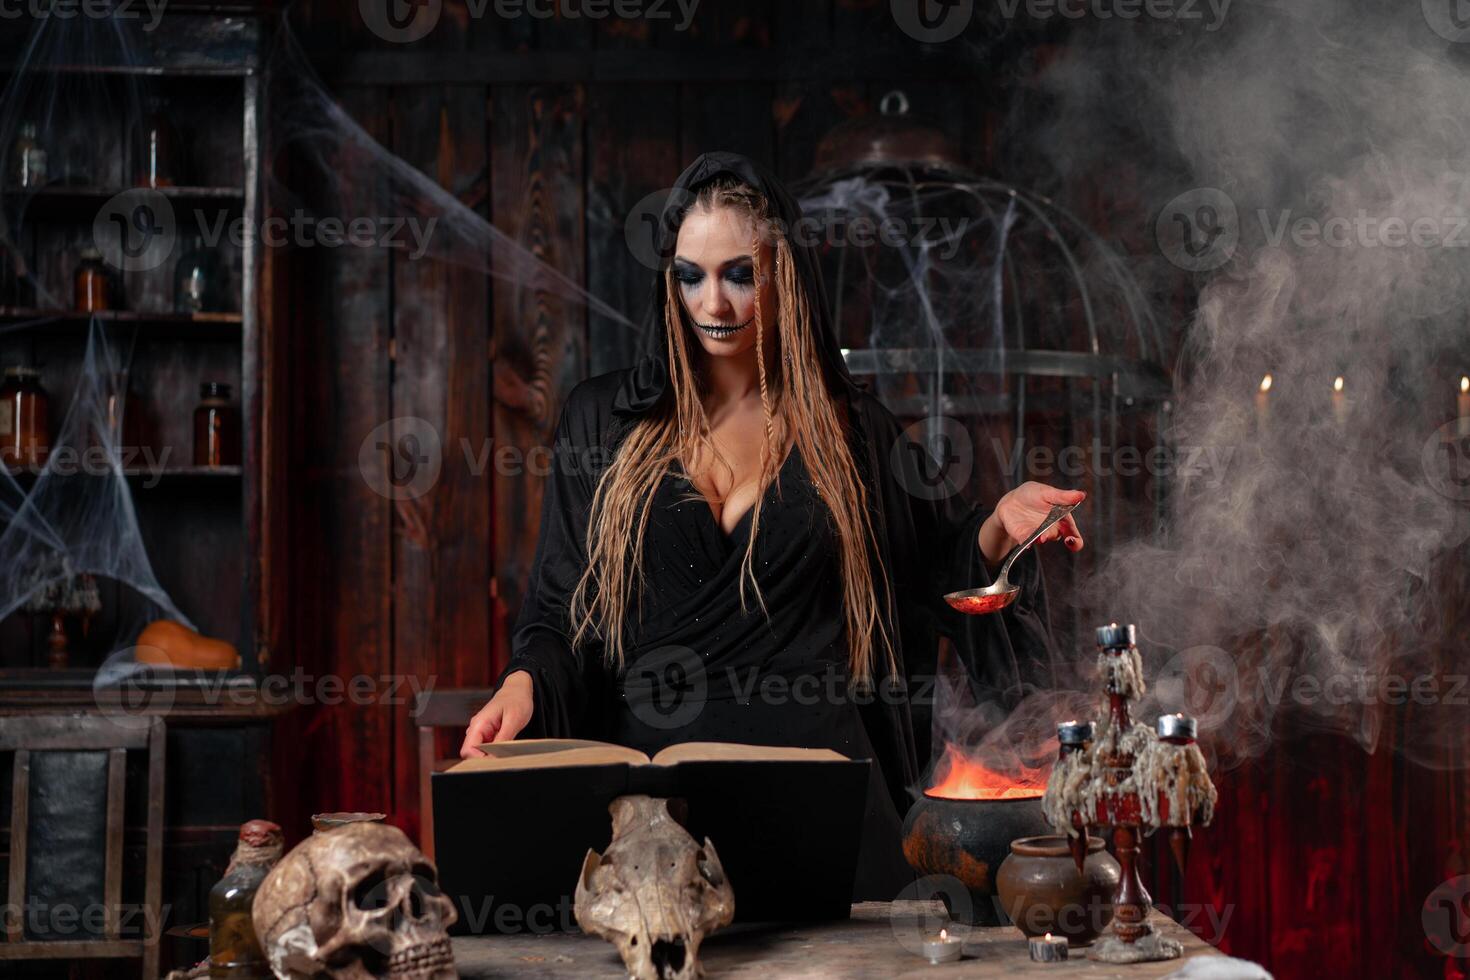 Halloween, strega uso Magia libro e calderone preparare veleno o amore pozione foto